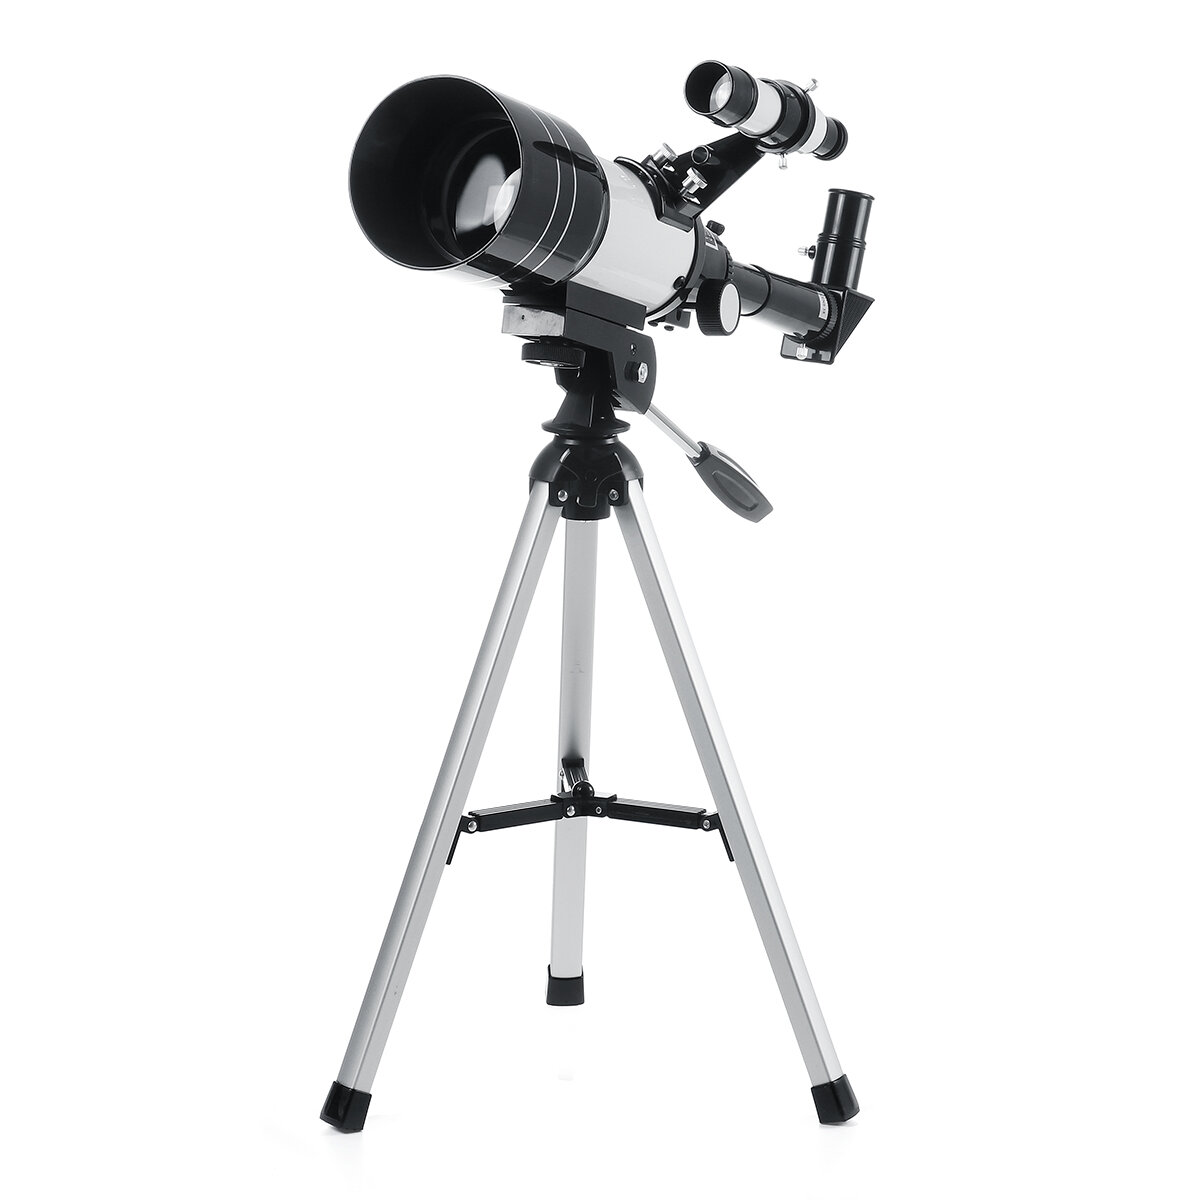 Profesjonalny teleskop astronomiczny 150x70mm do HD oglądania kosmosu i księżyca. Idealny do użytku na zewnątrz i w domu.